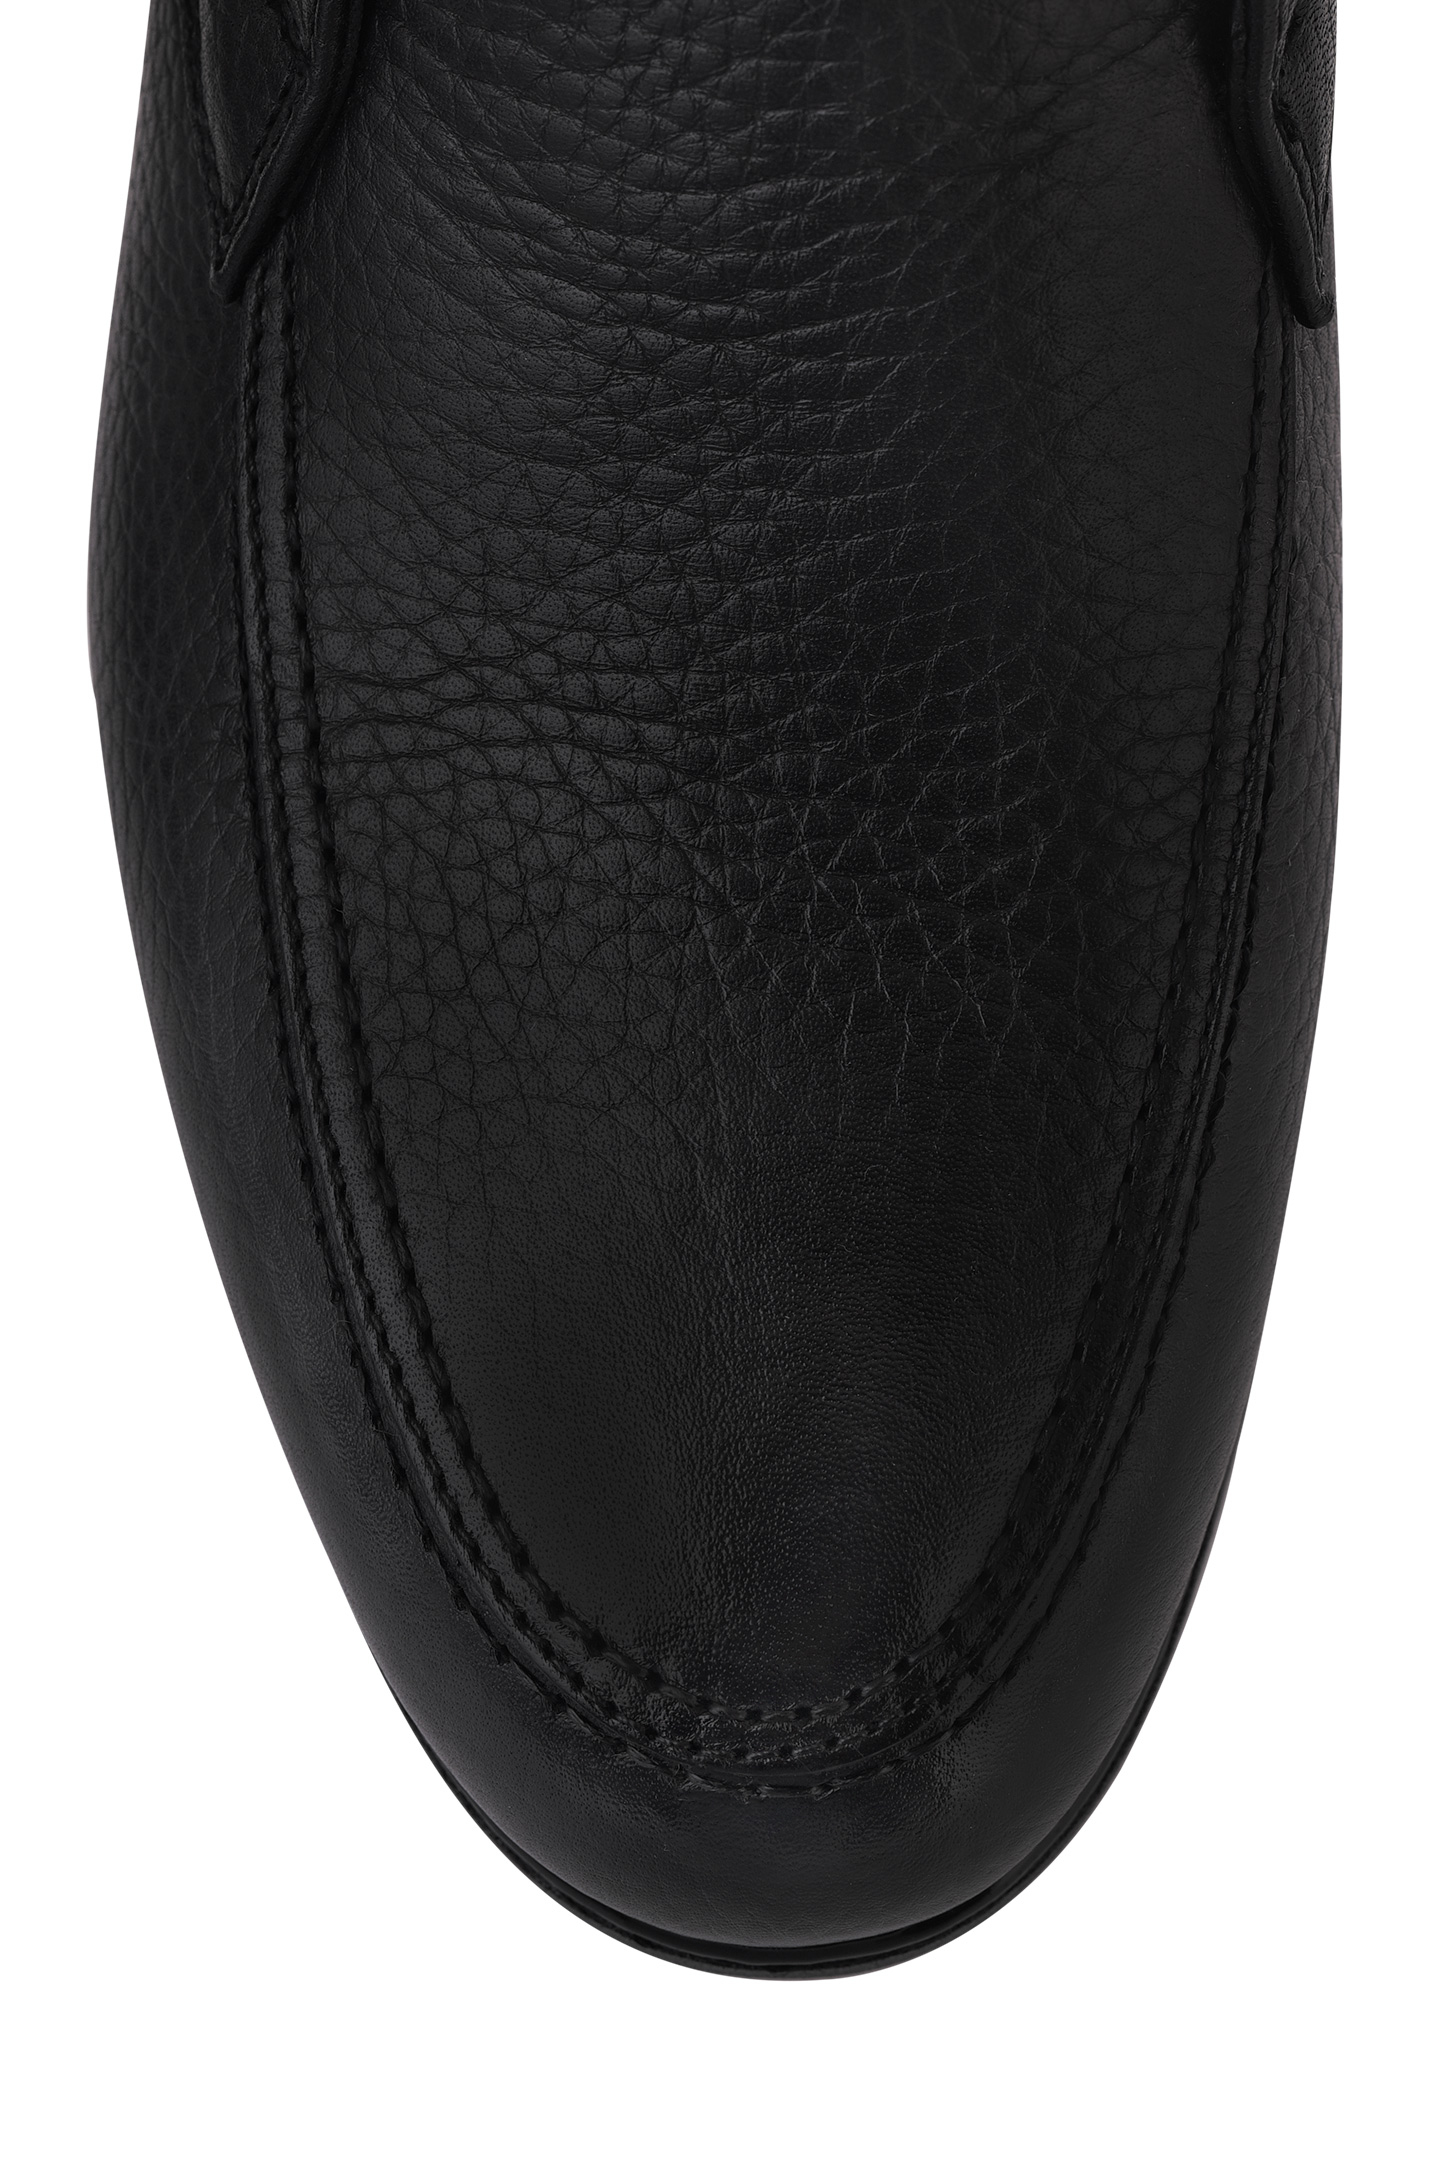 Ботинки DOUCAL'S DU2654EDO-UM019, цвет: Черный, Мужской